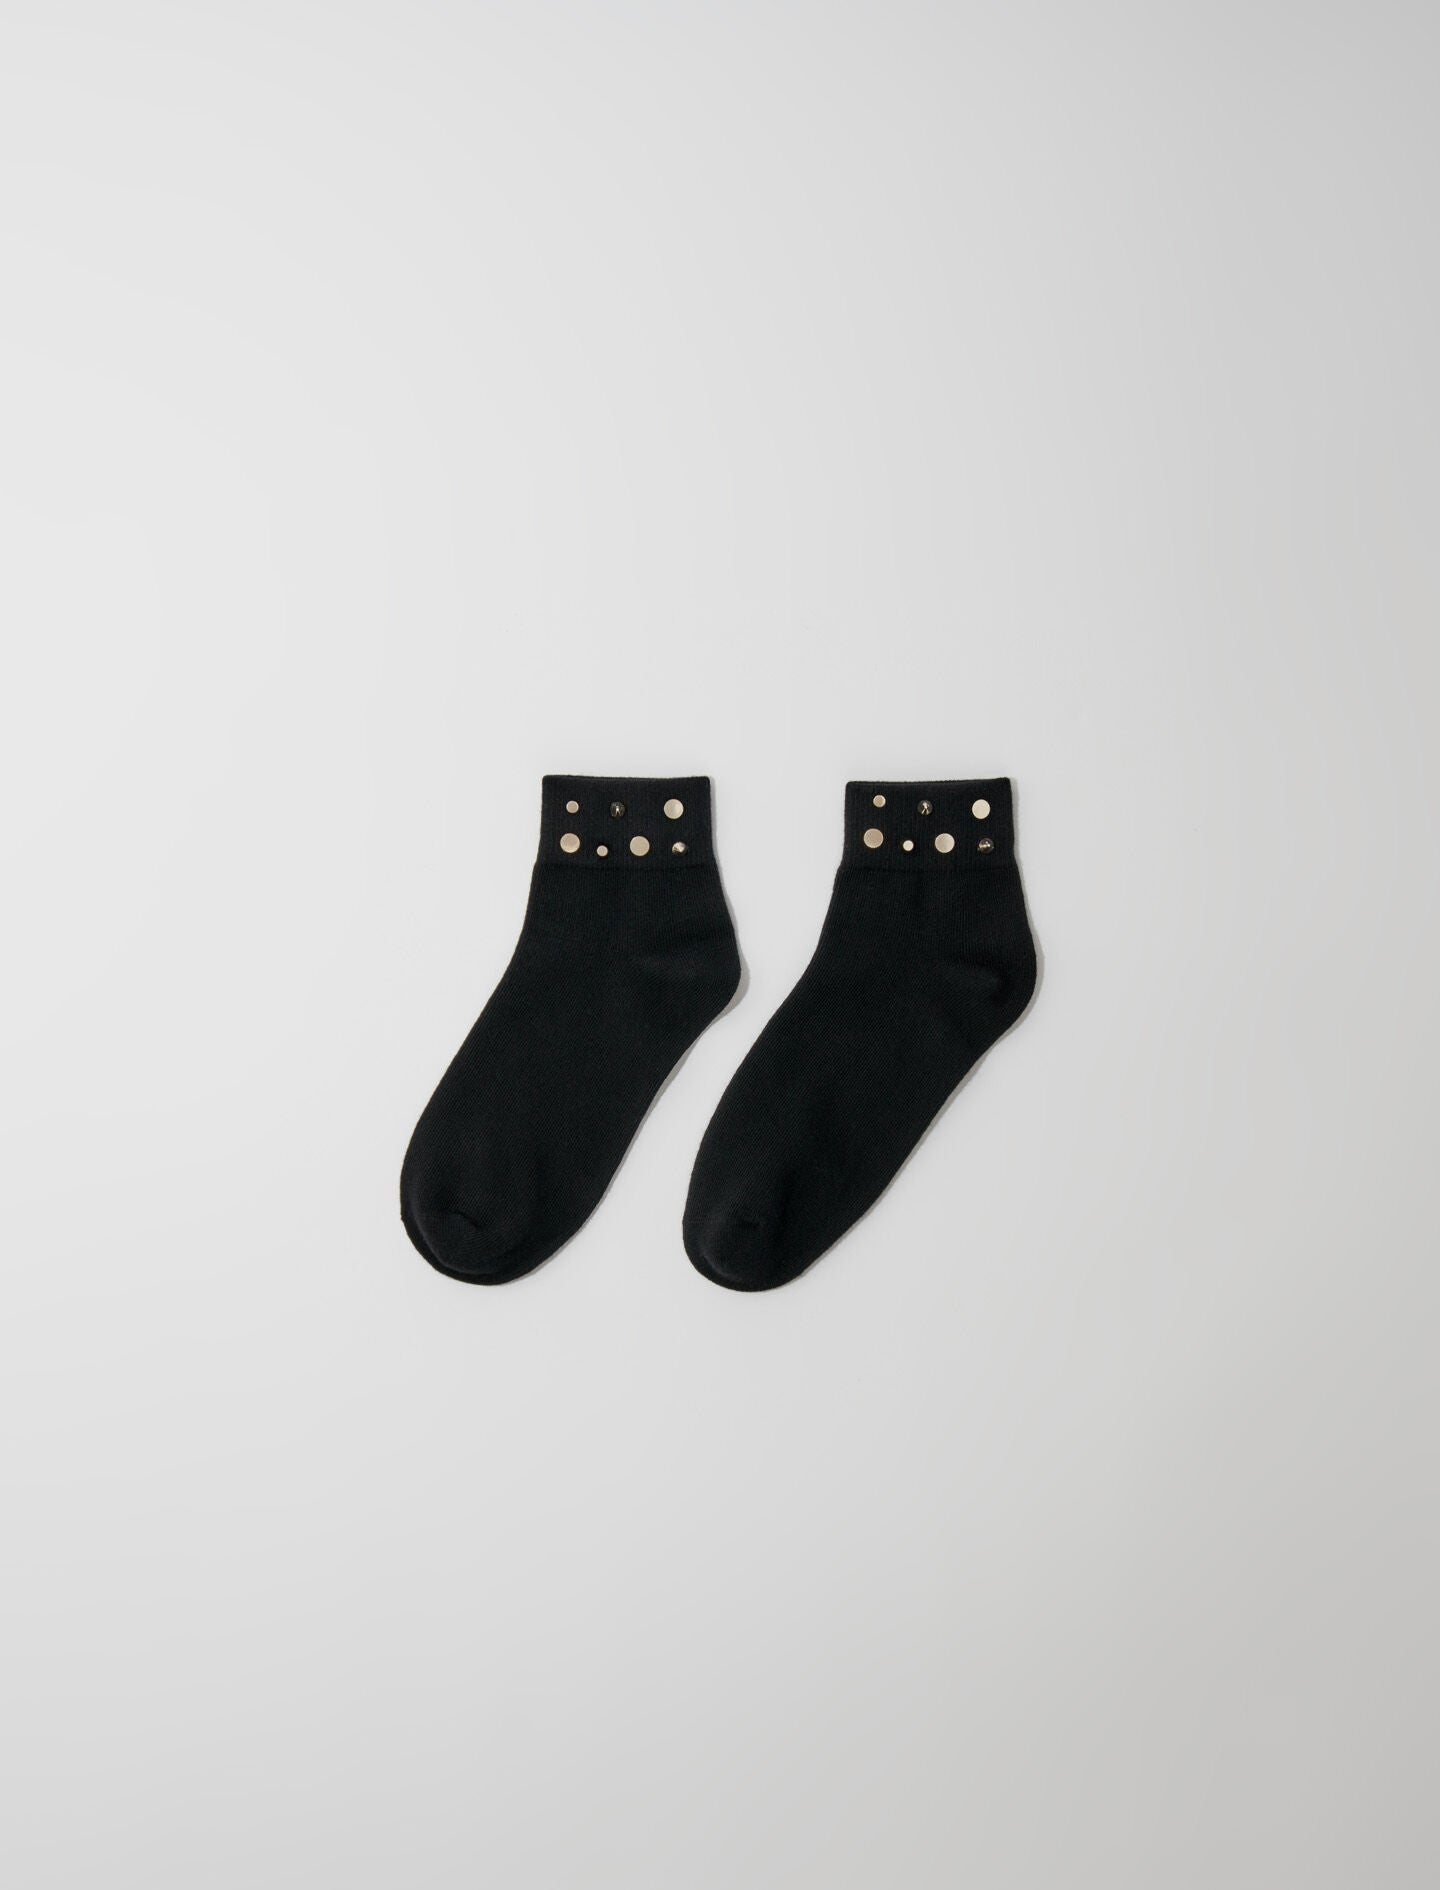 Black-featured-rhinestone socks